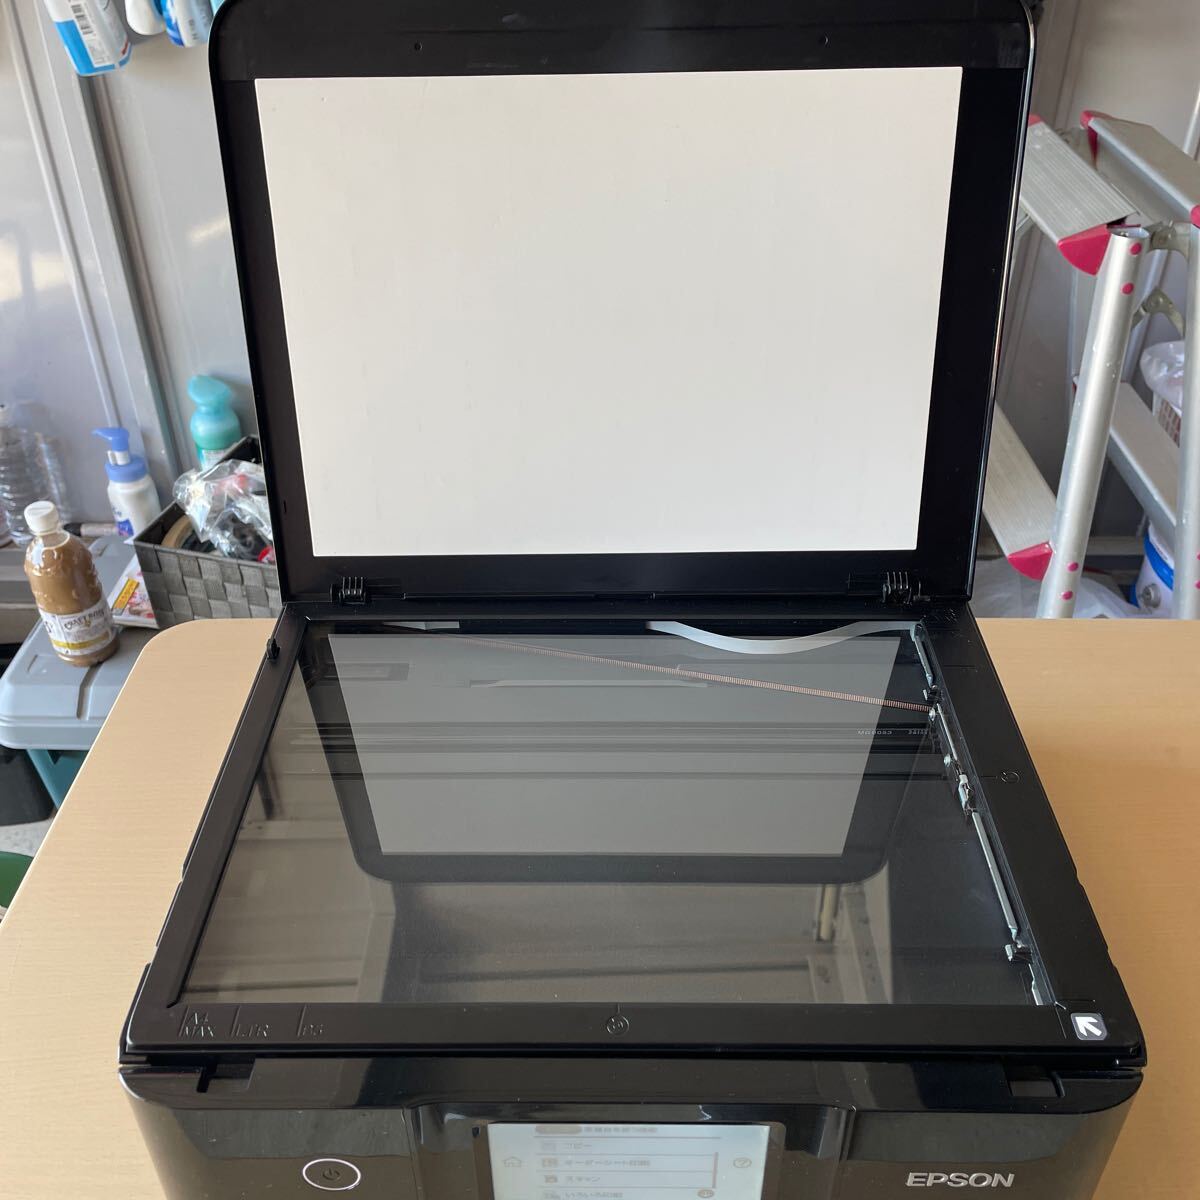  Epson EP-882AB струйный принтер 